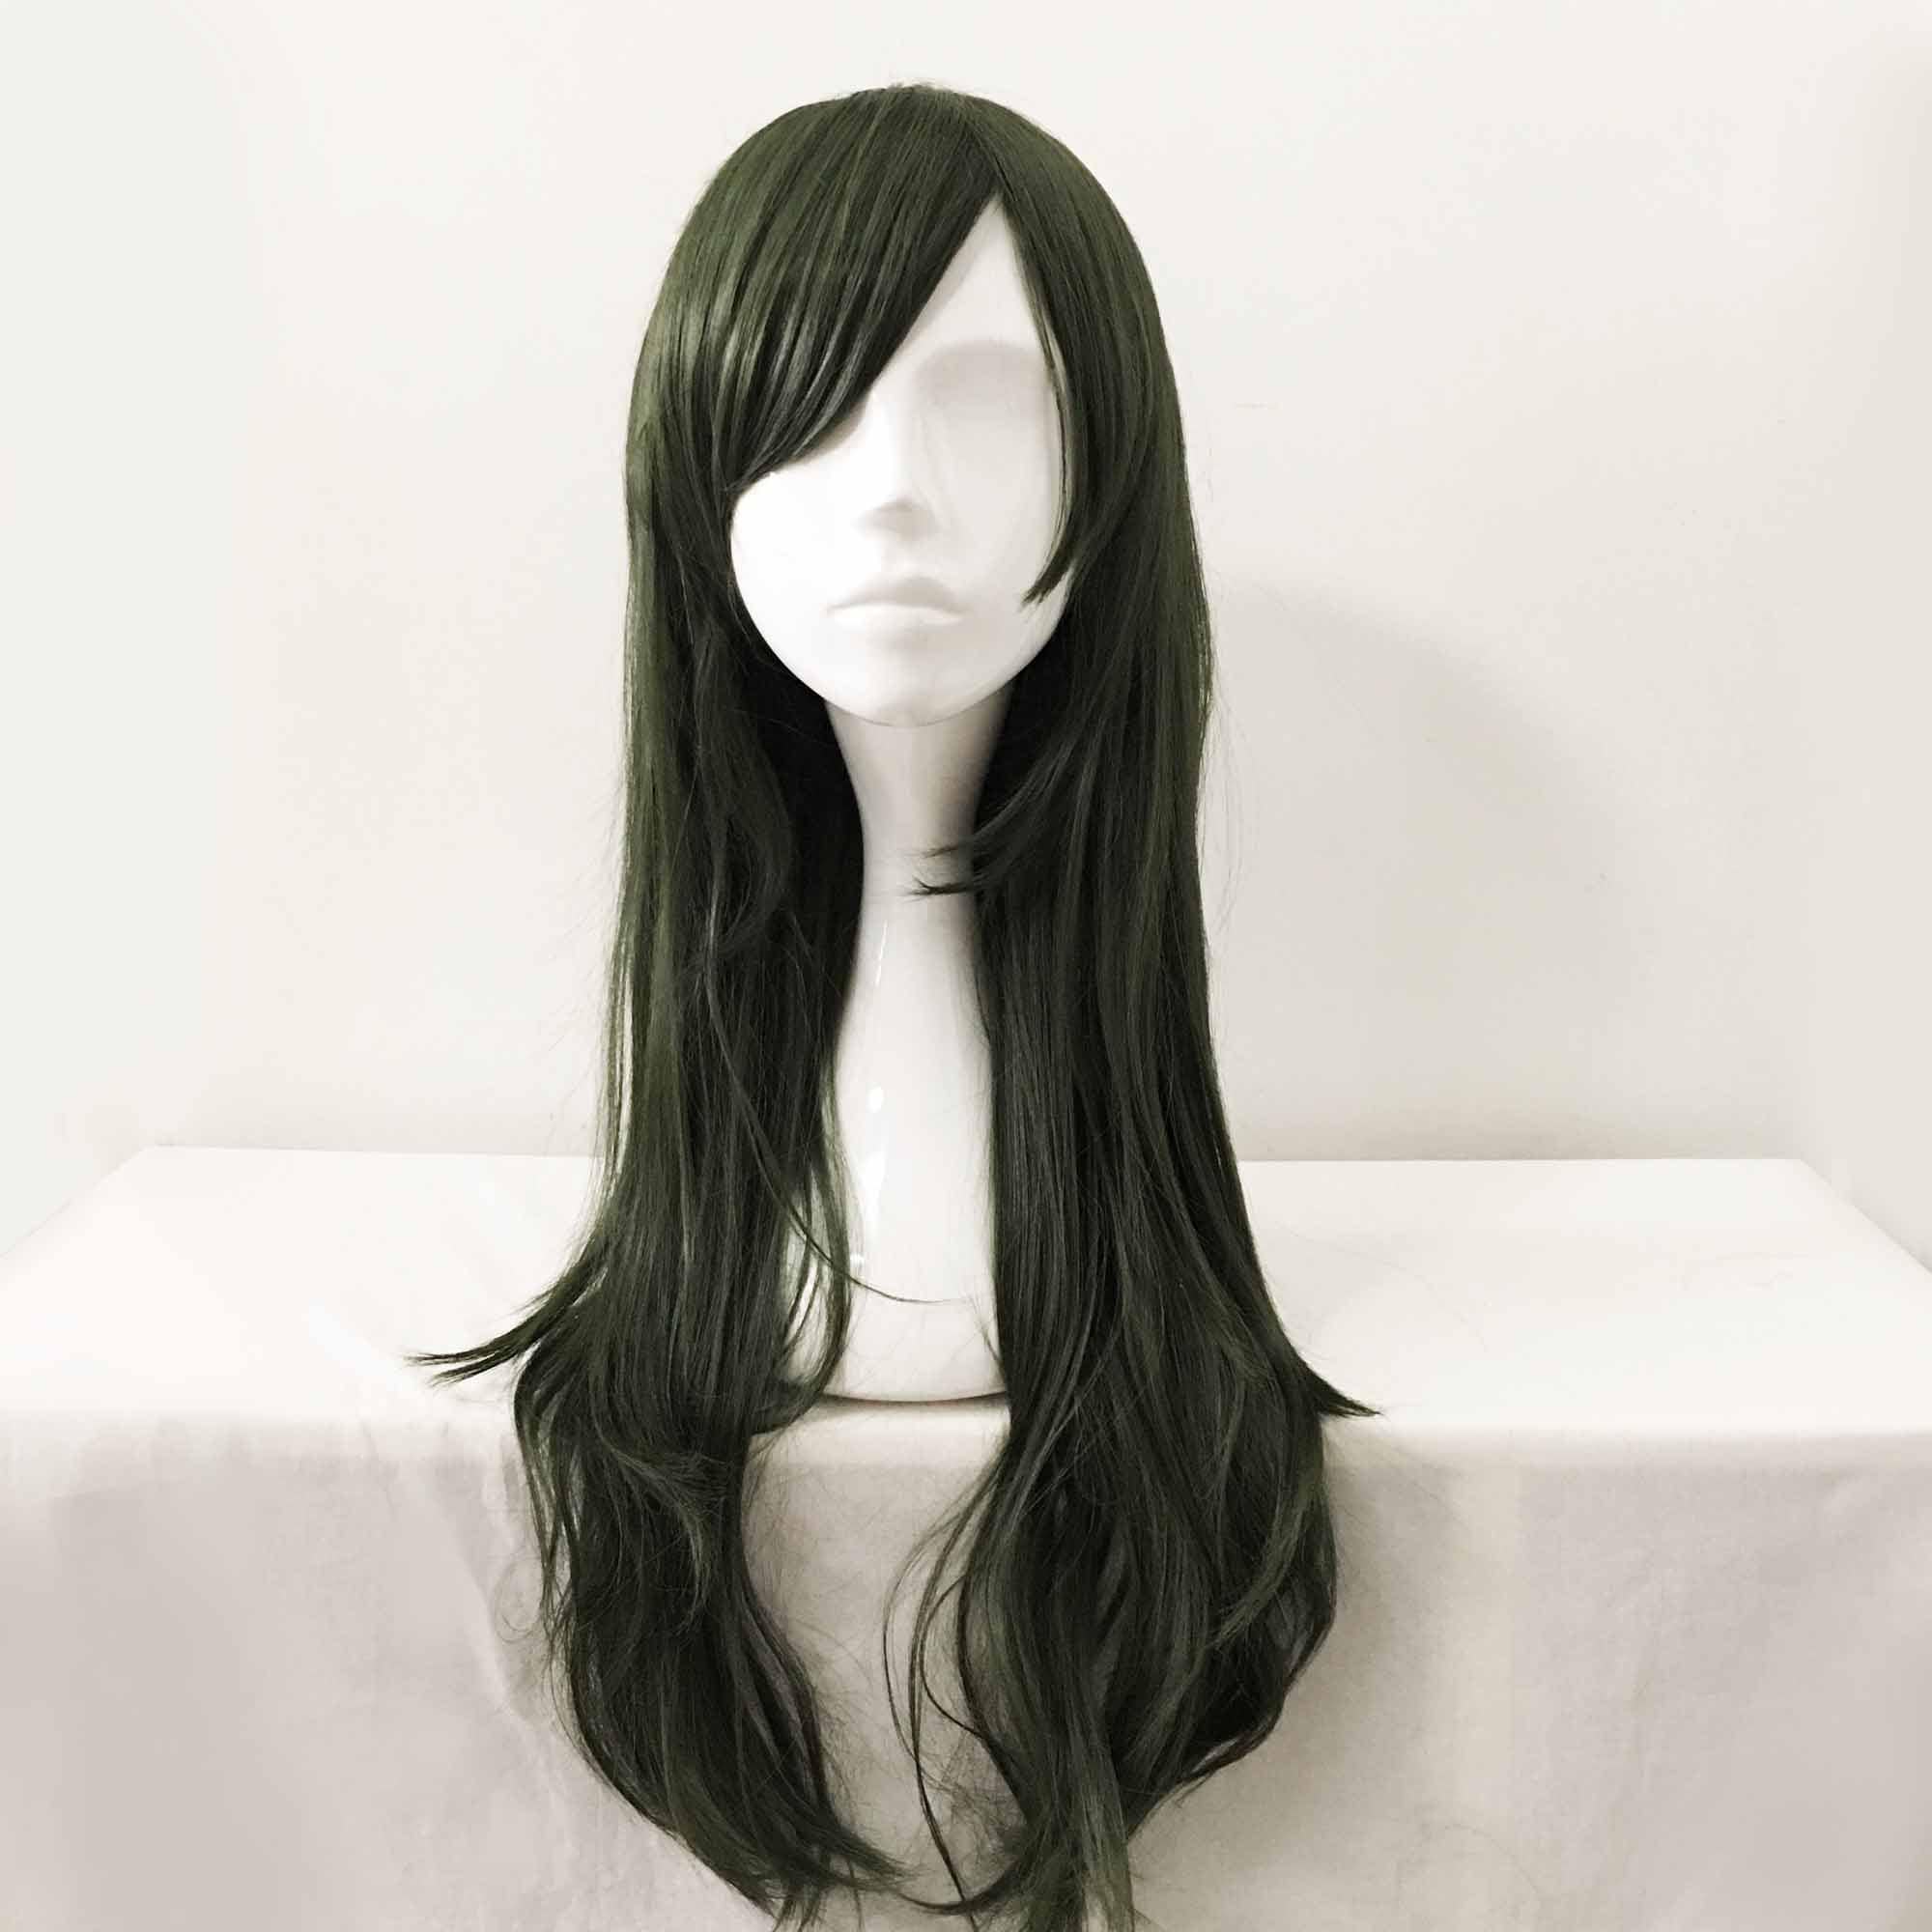 Bonnet bain cheveux long – Fit Super-Humain